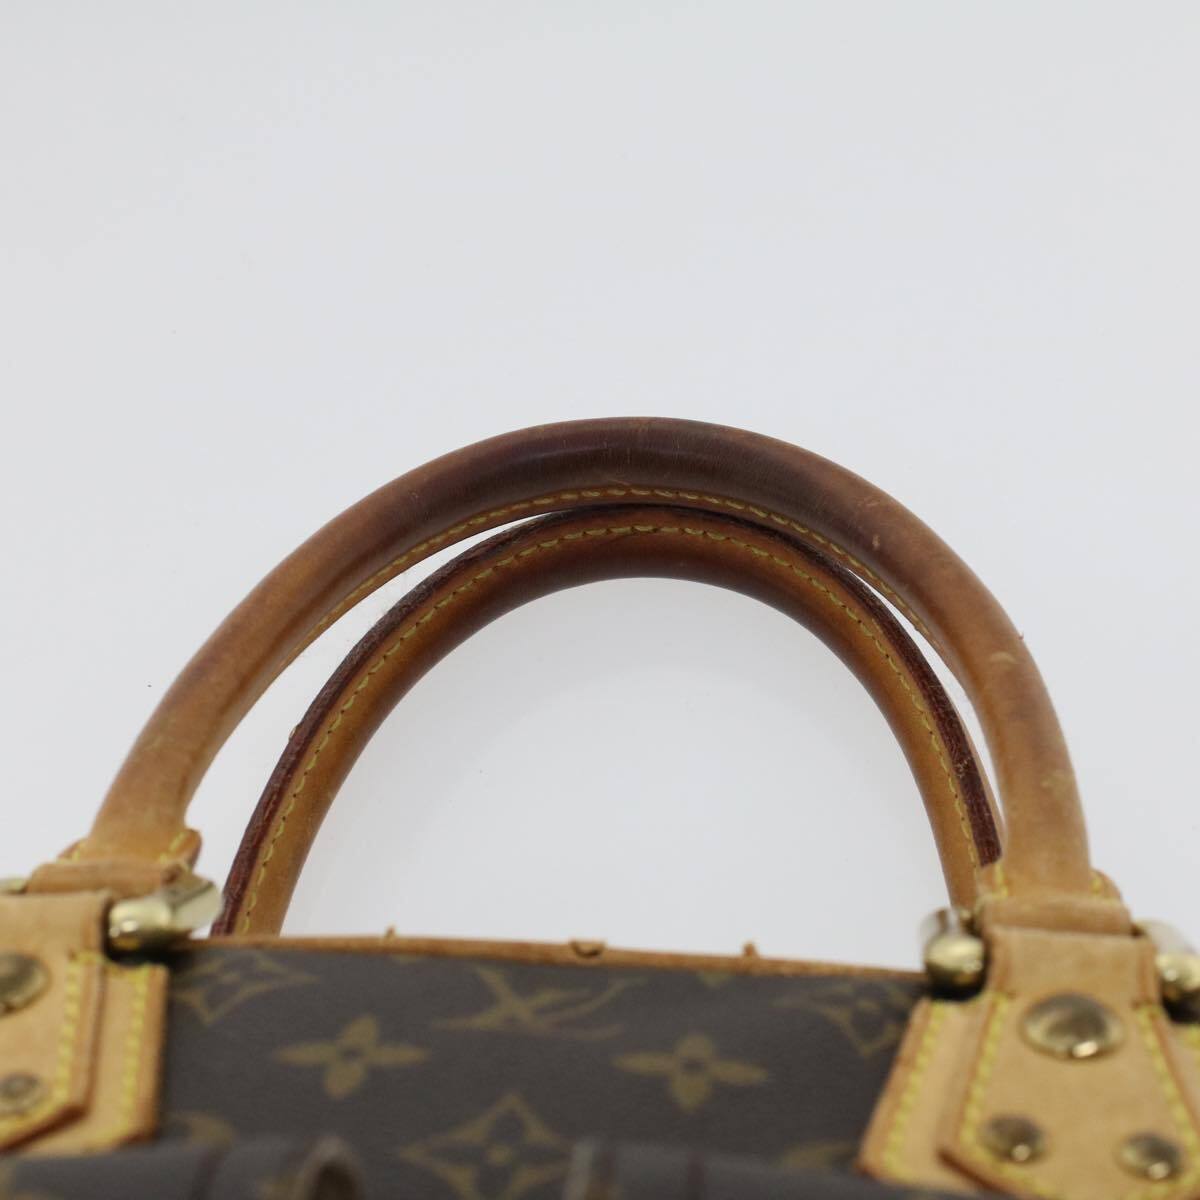 Louis Vuitton M40026 Monogram Manhattan PM Hand Bag - Brown